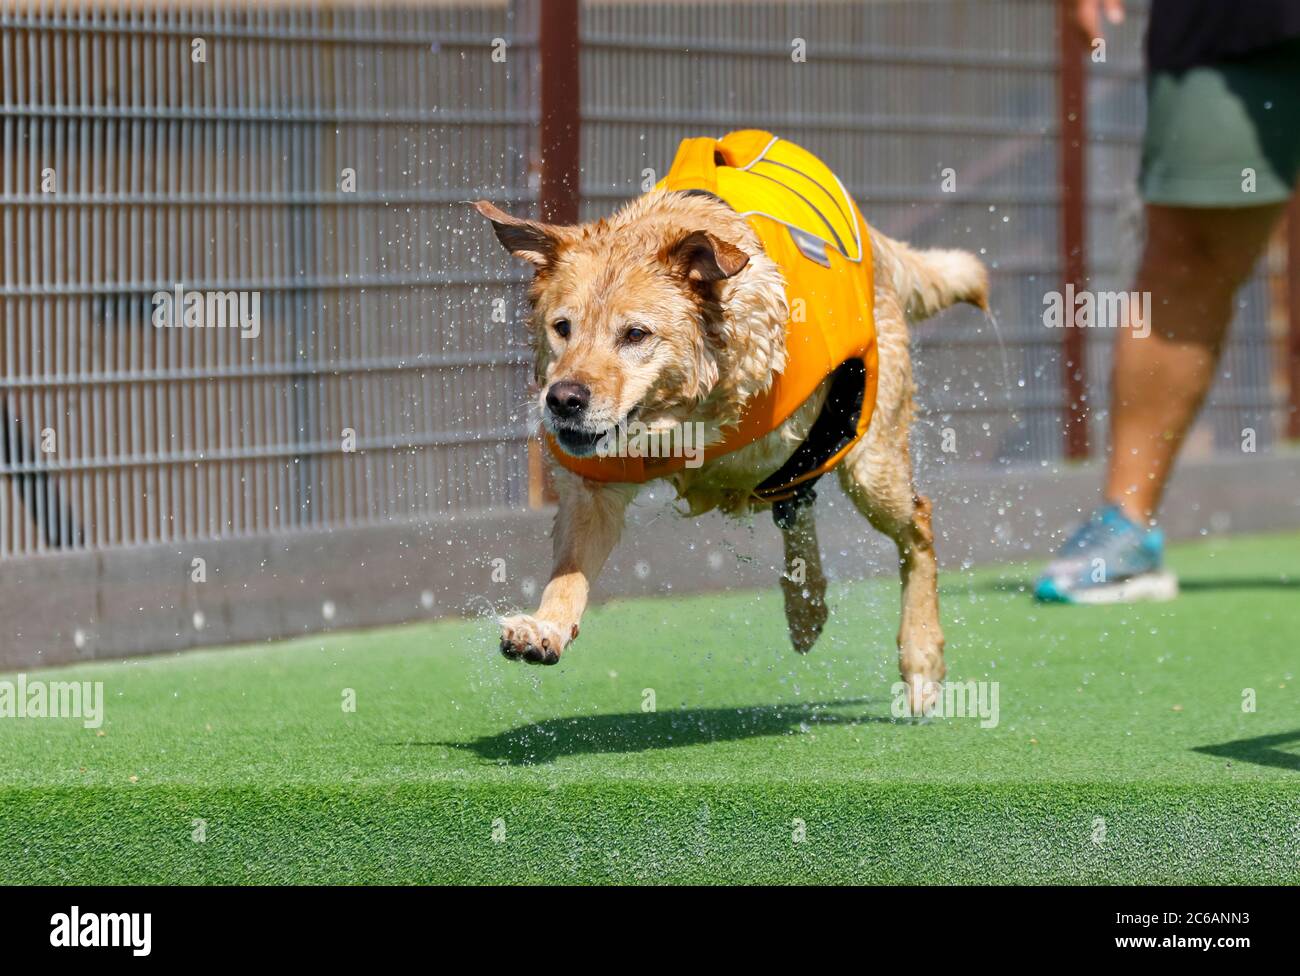 Cane a tre zampe circa per saltare fuori da un molo in un cane attracco immersione Foto Stock